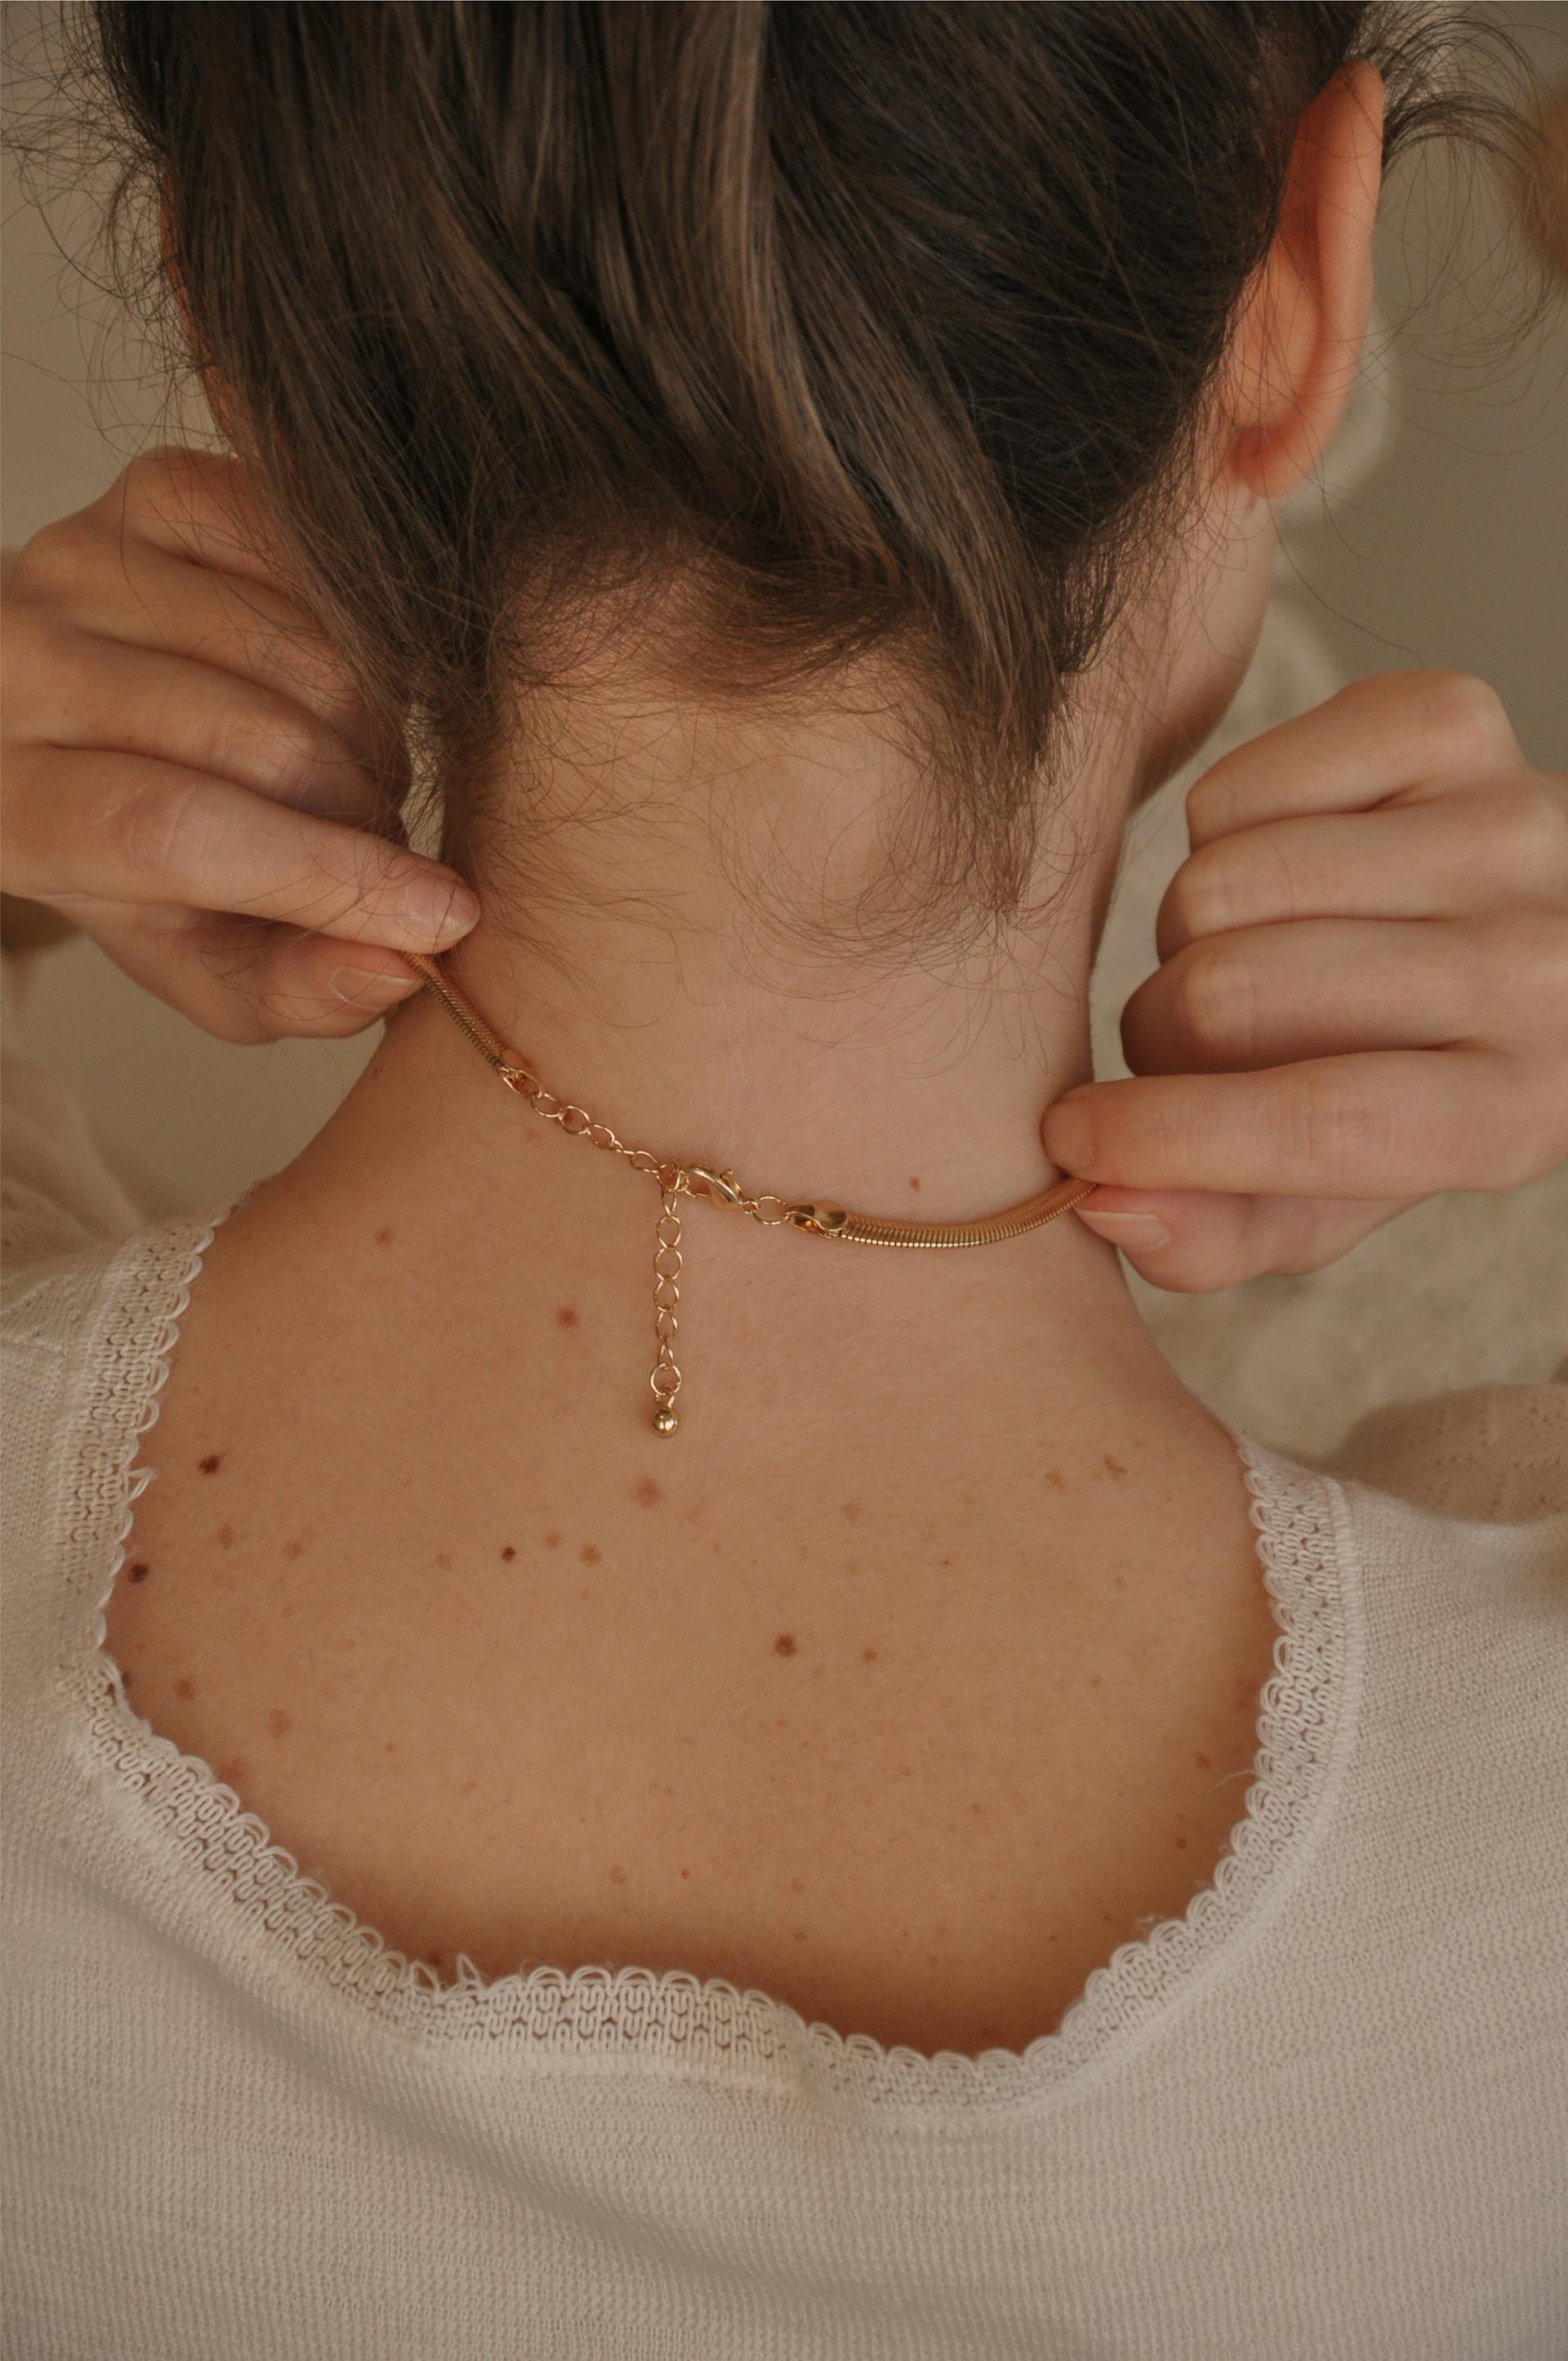 Vista trasera de una mujer tocándose el collar | Fuente: Pexels